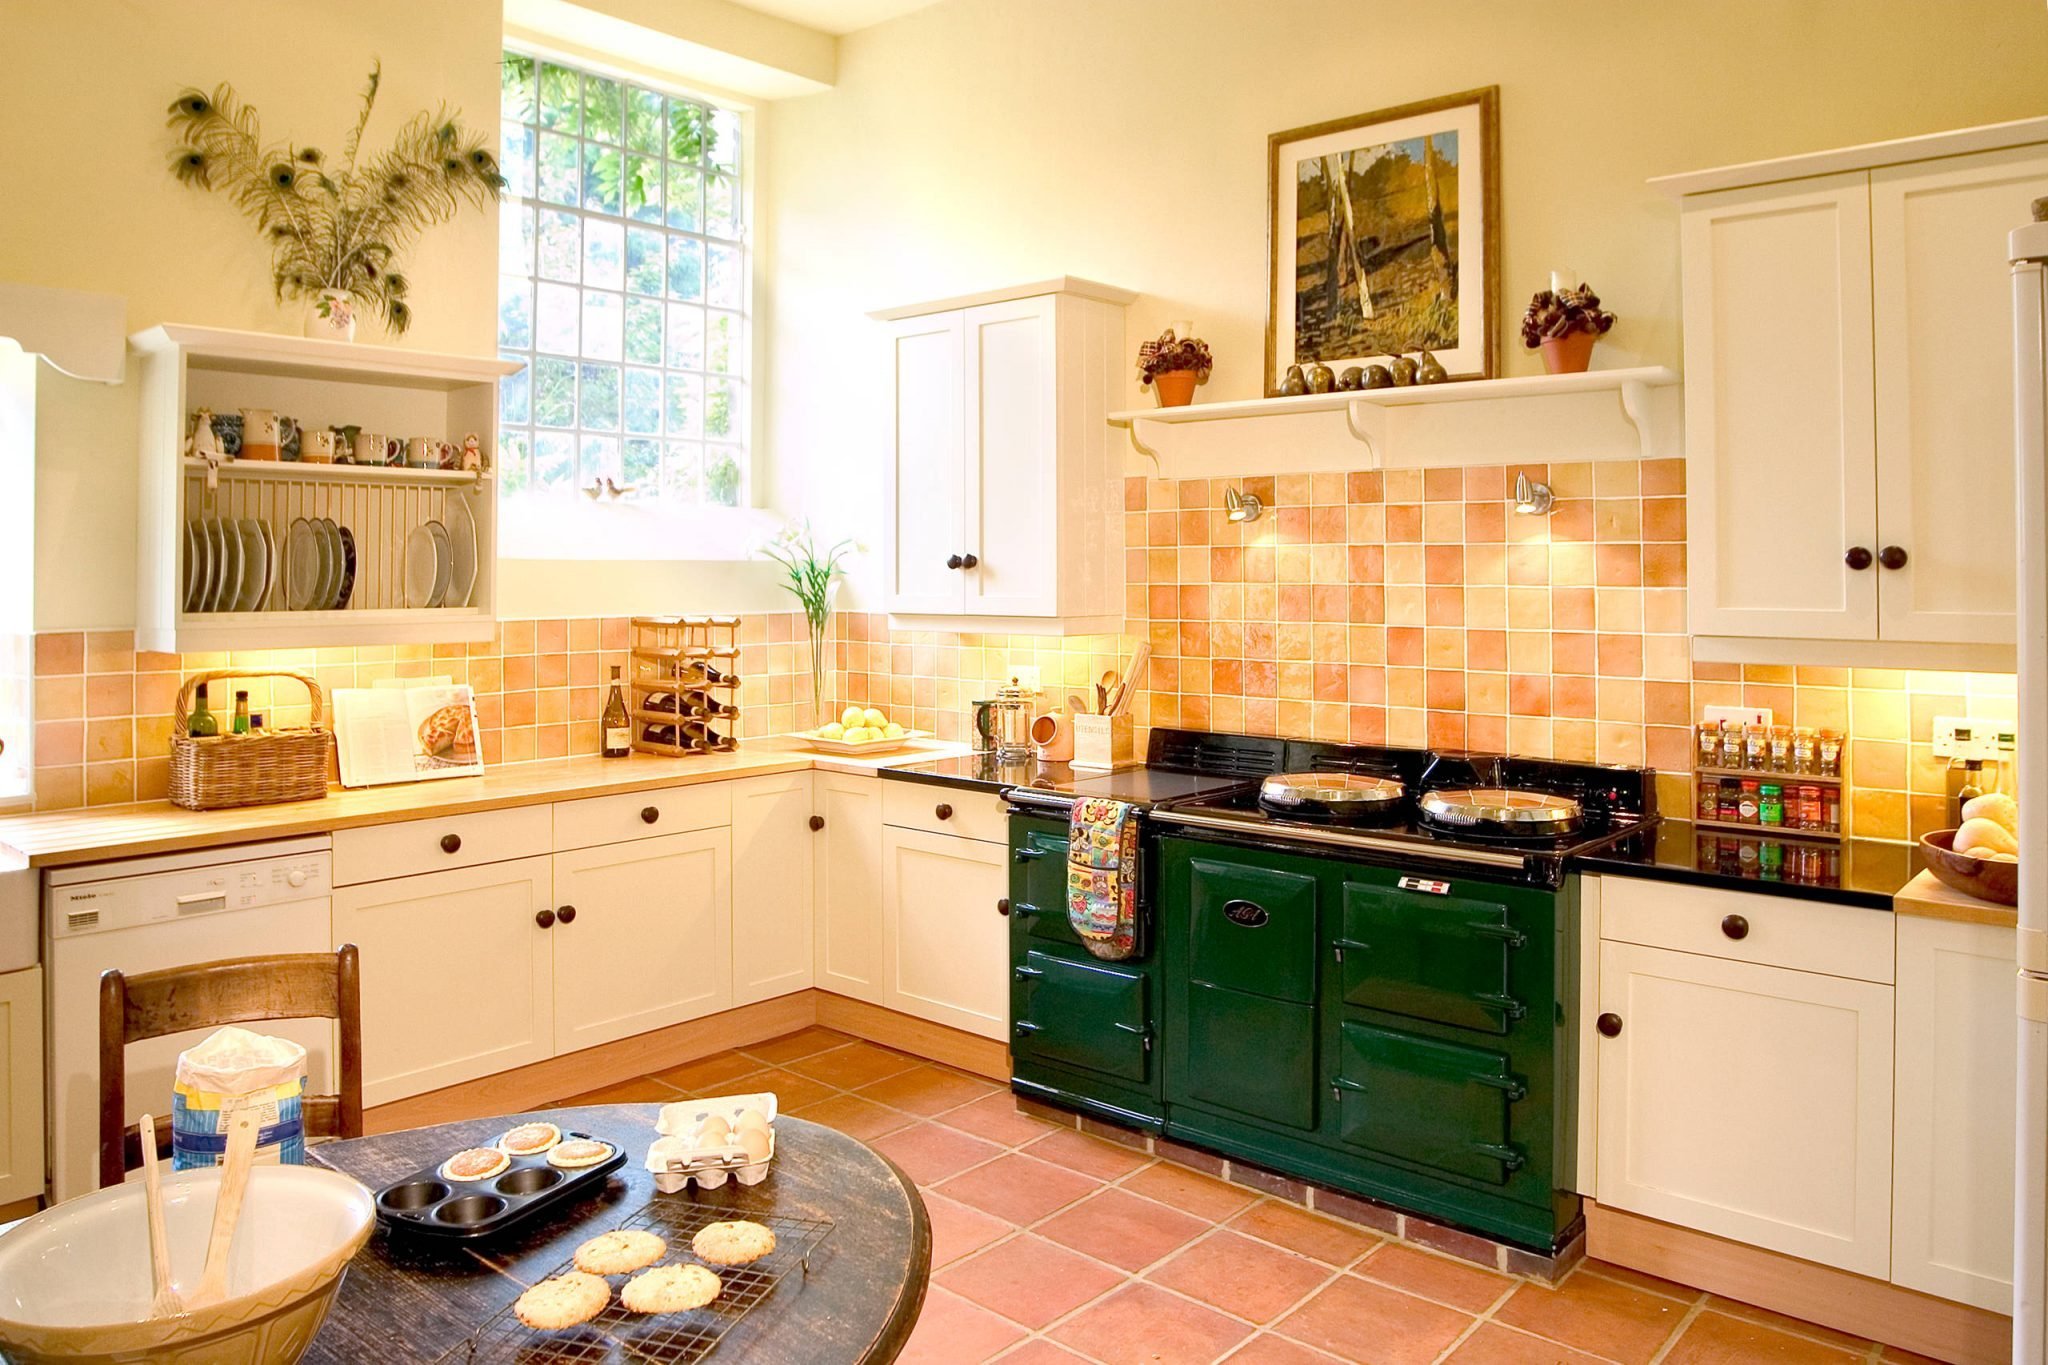 Красивая плитка на кухню. Терракотовая кухня в стиле Кантри. Кухня персикового цвета. Терракотовая плитка на кухне. Терракотовая плитка в интерьере кухни.